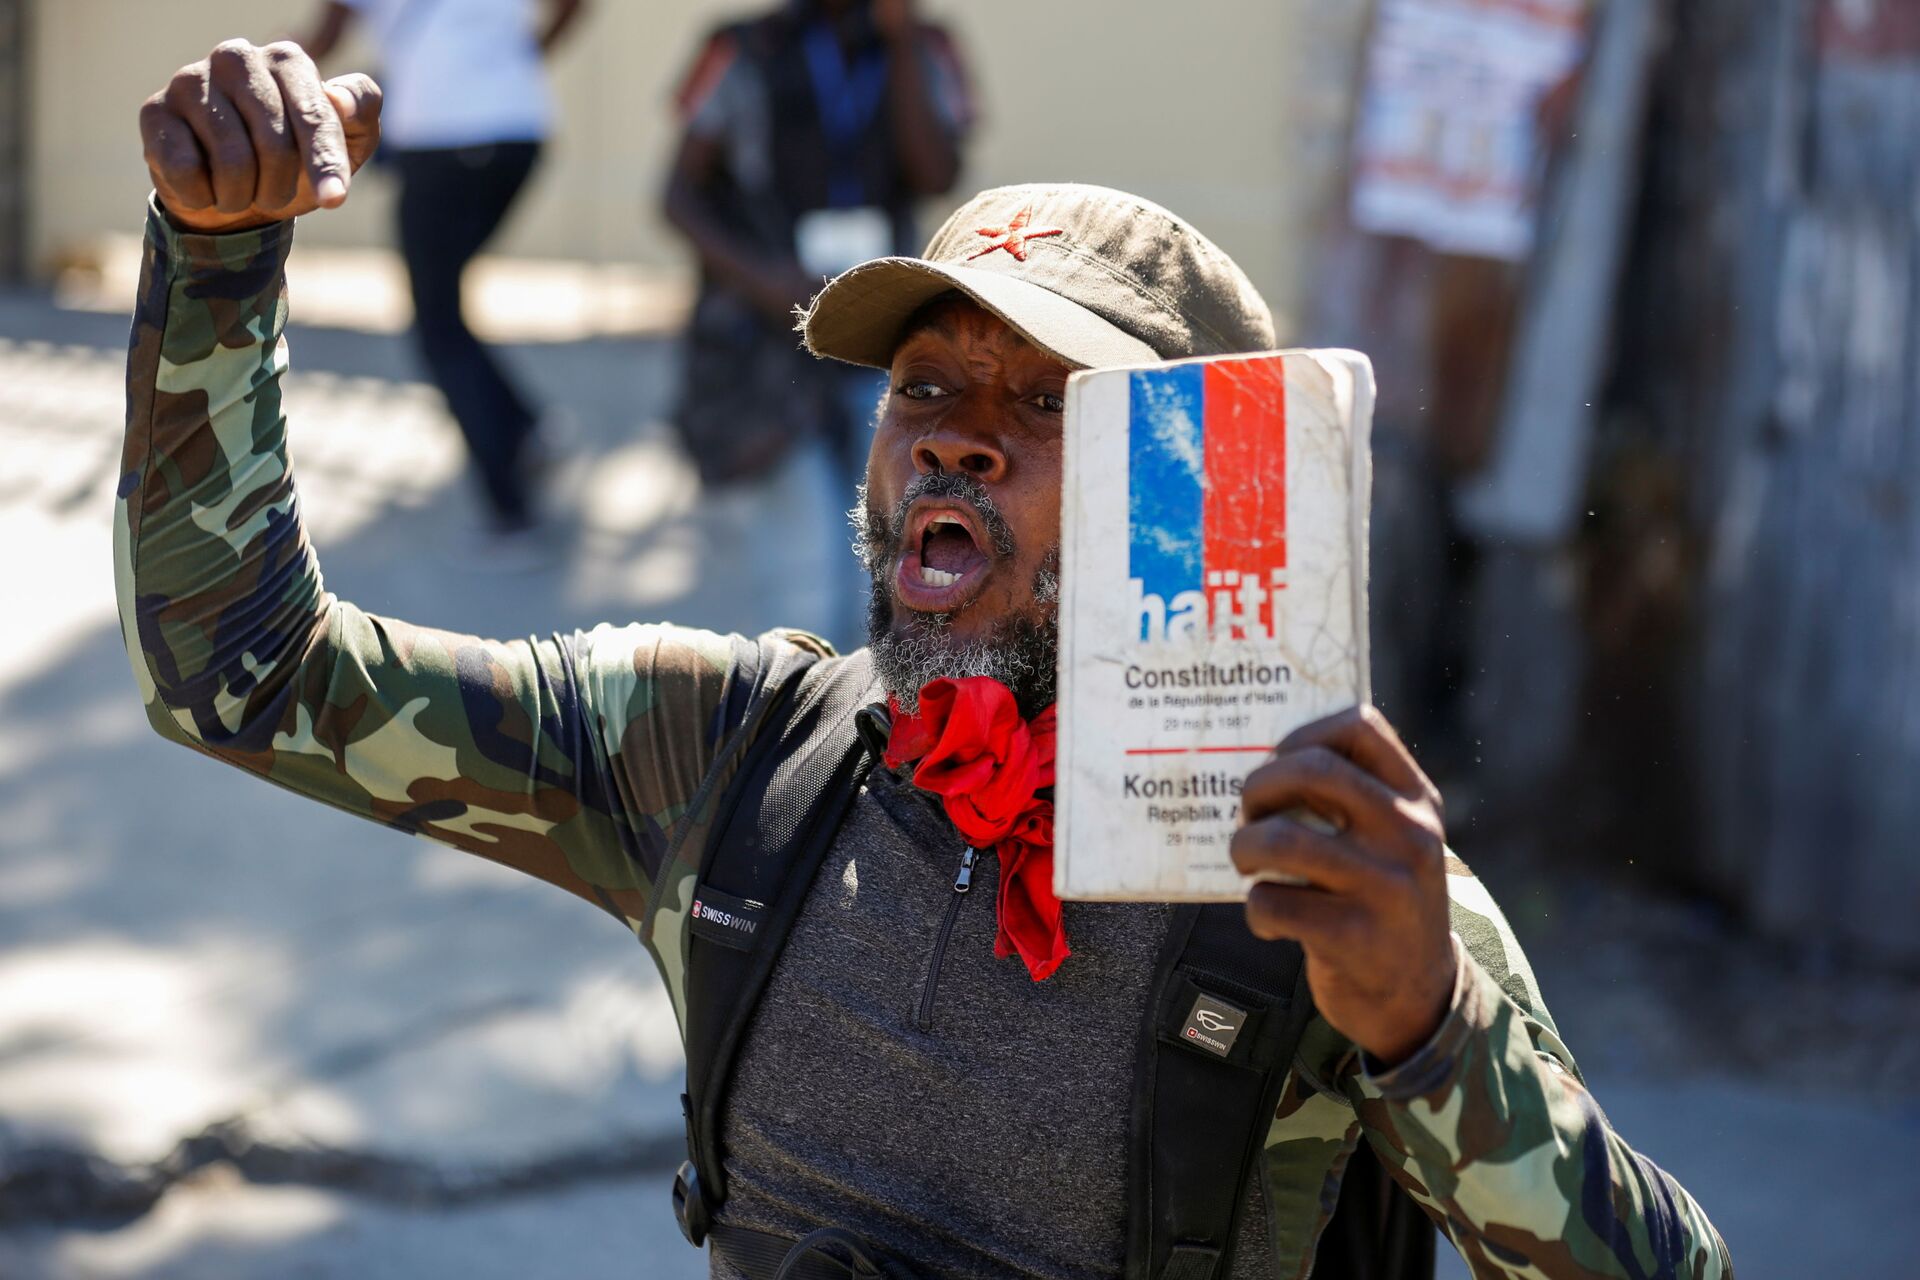 Protestos no Haiti: entenda a luta política no país e o que os EUA têm a ver com isso - Sputnik Brasil, 1920, 18.02.2021